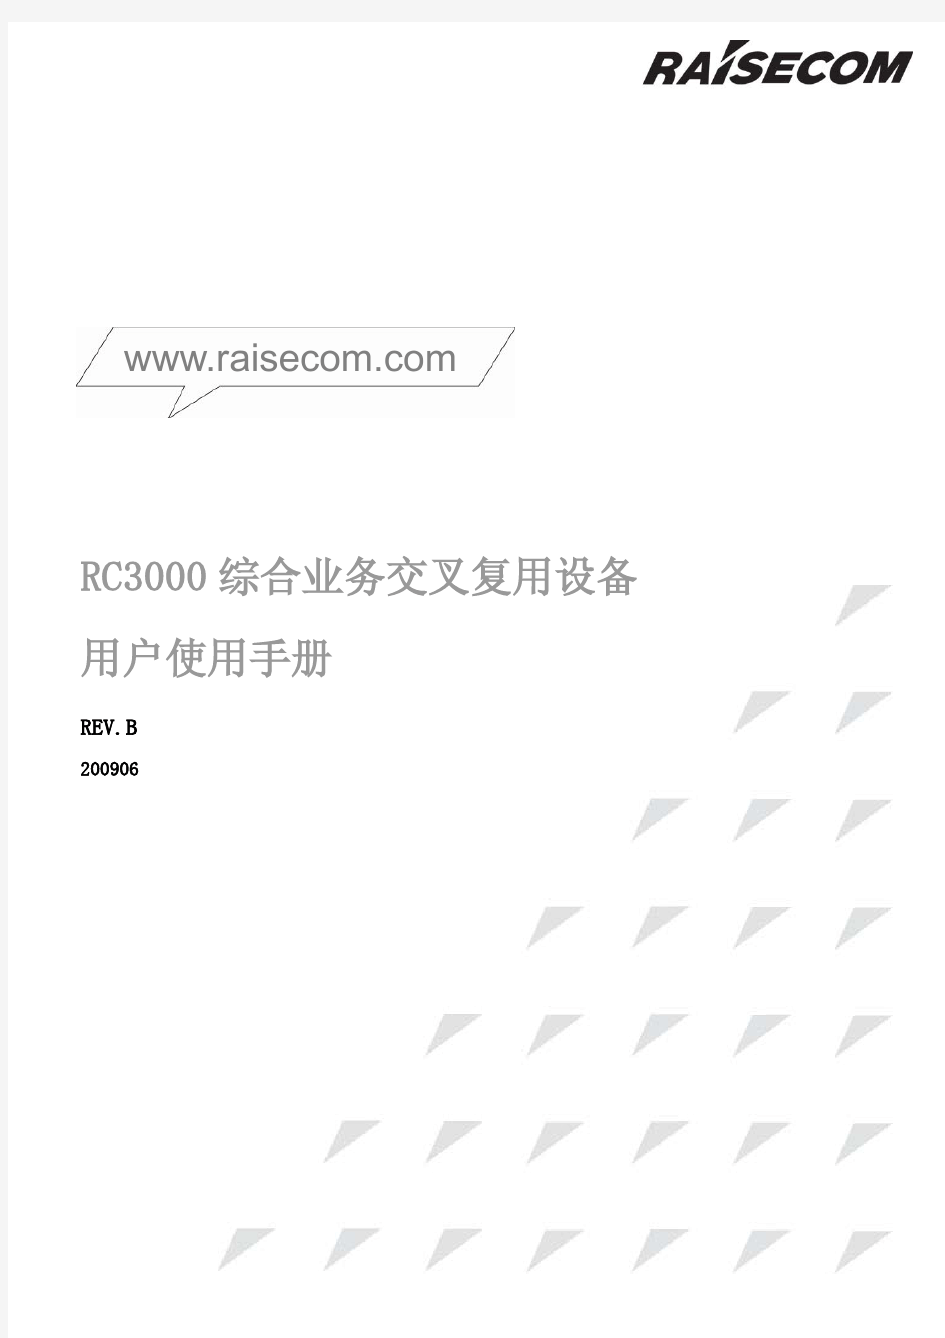 瑞斯康达综合业务交叉复用设备用户使用手册200906